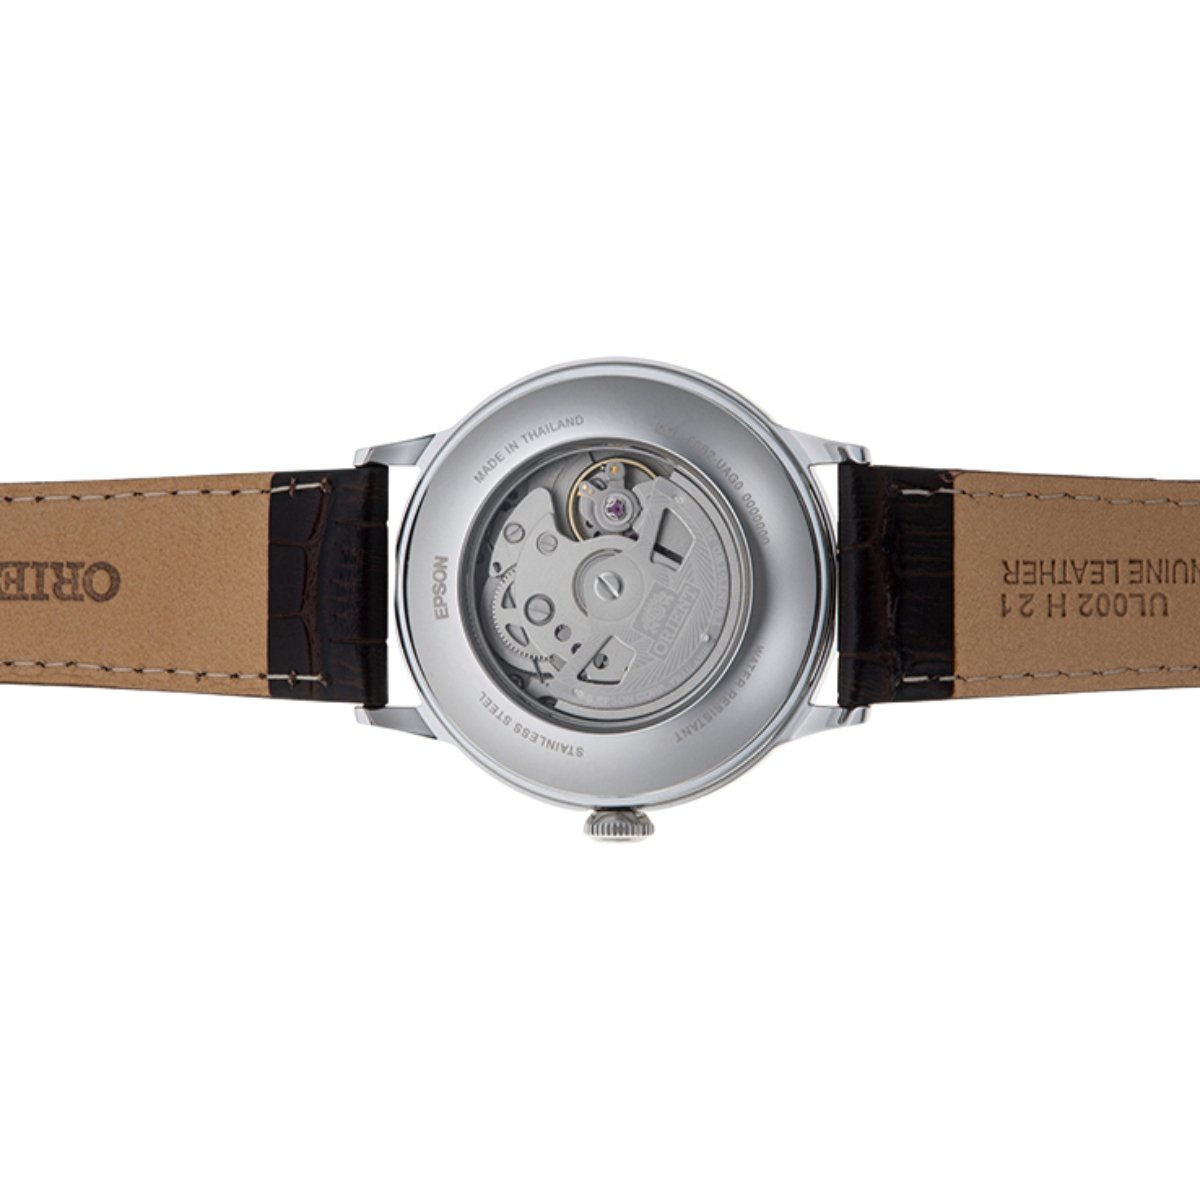 Orient RA-AK0702Y10B RA-AK0702Y Bambino Version 8 Classic Beige Dial Watch -Orient